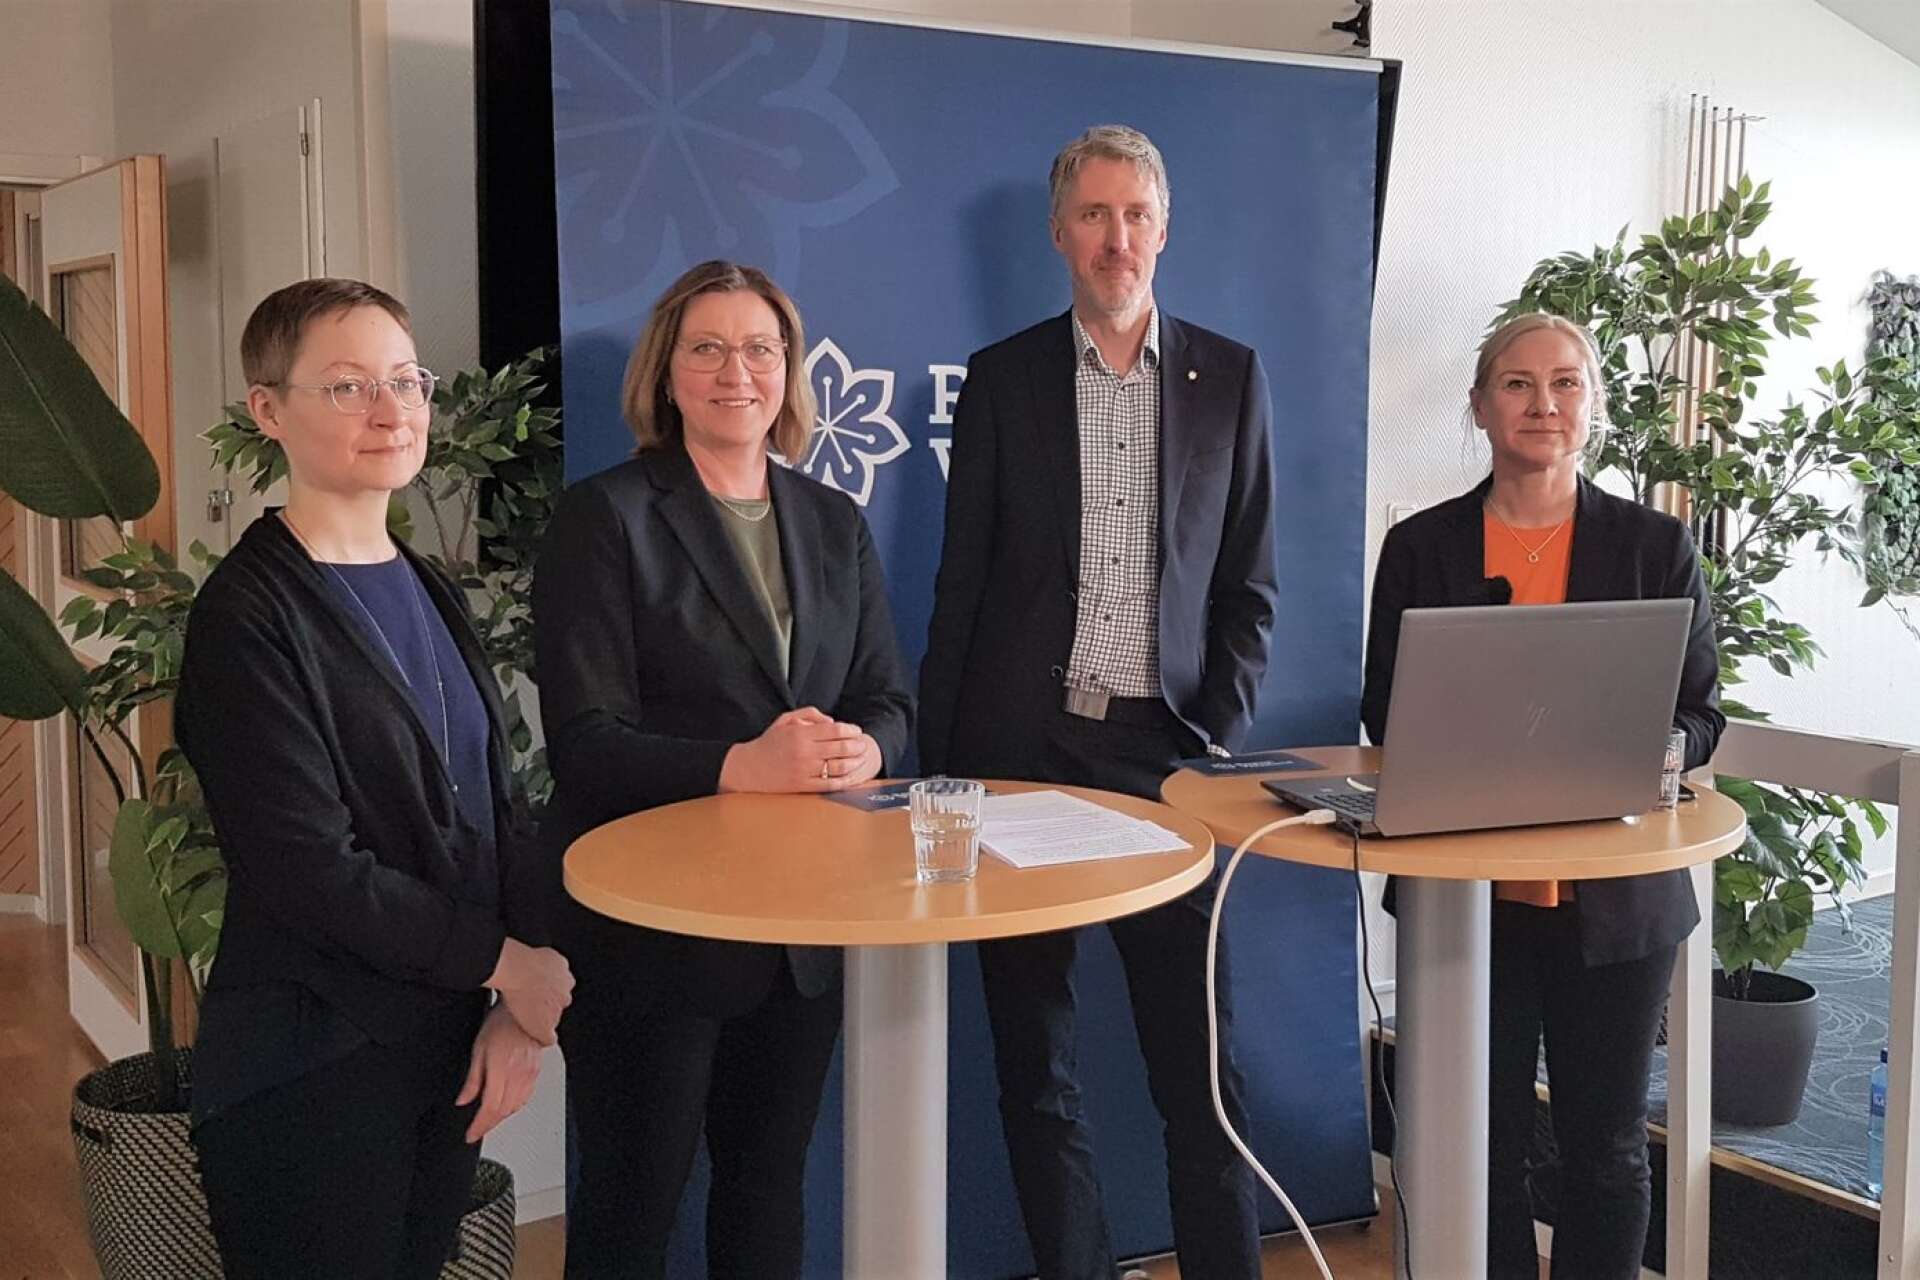 Sandra Röjdén Thyberg, analytiker Region Värmland, Stina Höök (M), Erik Evestam (C) och Ulrica Matthed Bergström, strateg kompetensförsörjning Region Värmland, presenterade den nya rapporten digitalt under onsdagen.